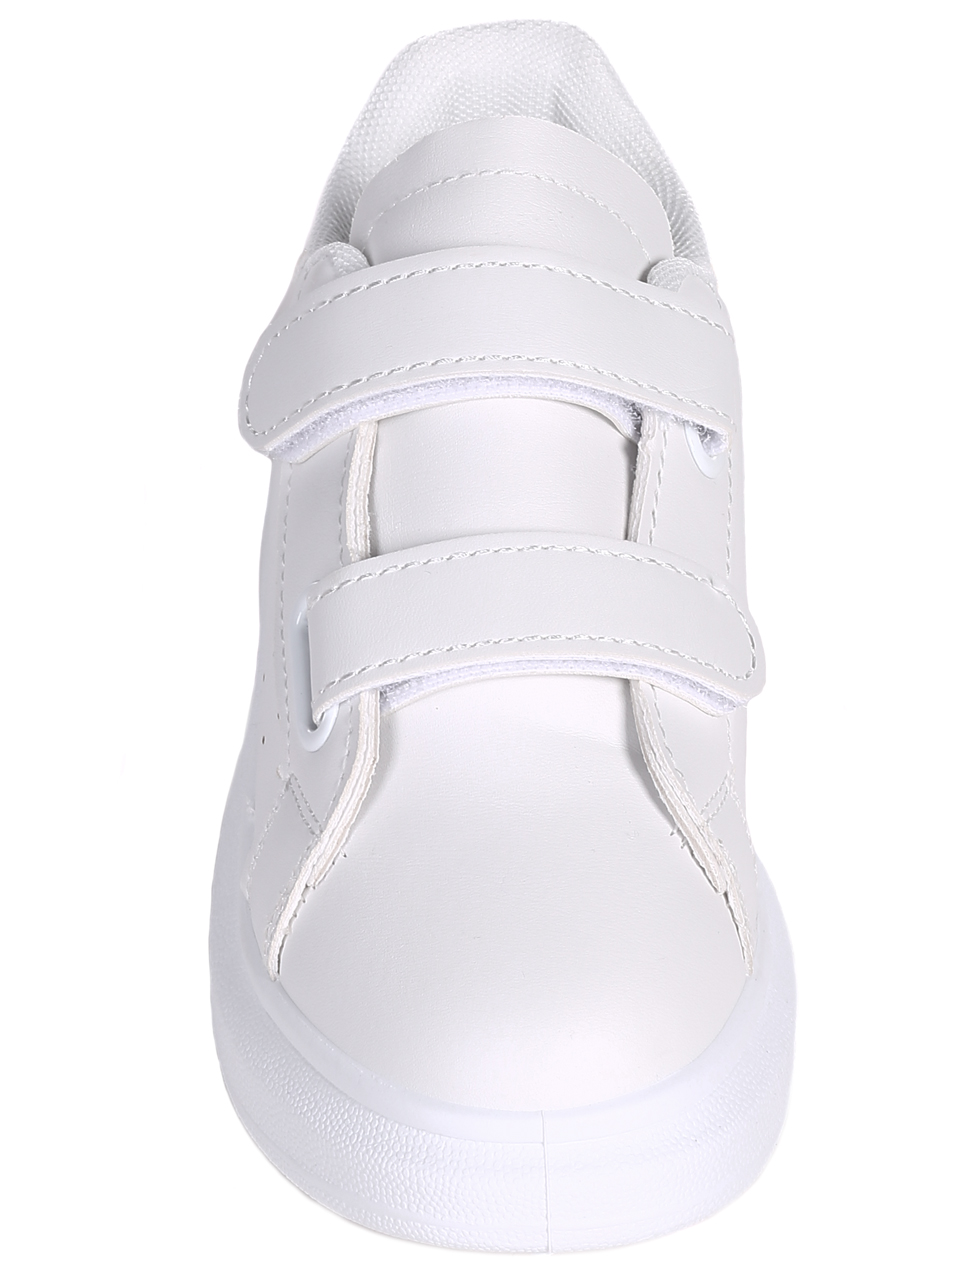 Ежедневни детски обувки в бяло 18U-22035 white